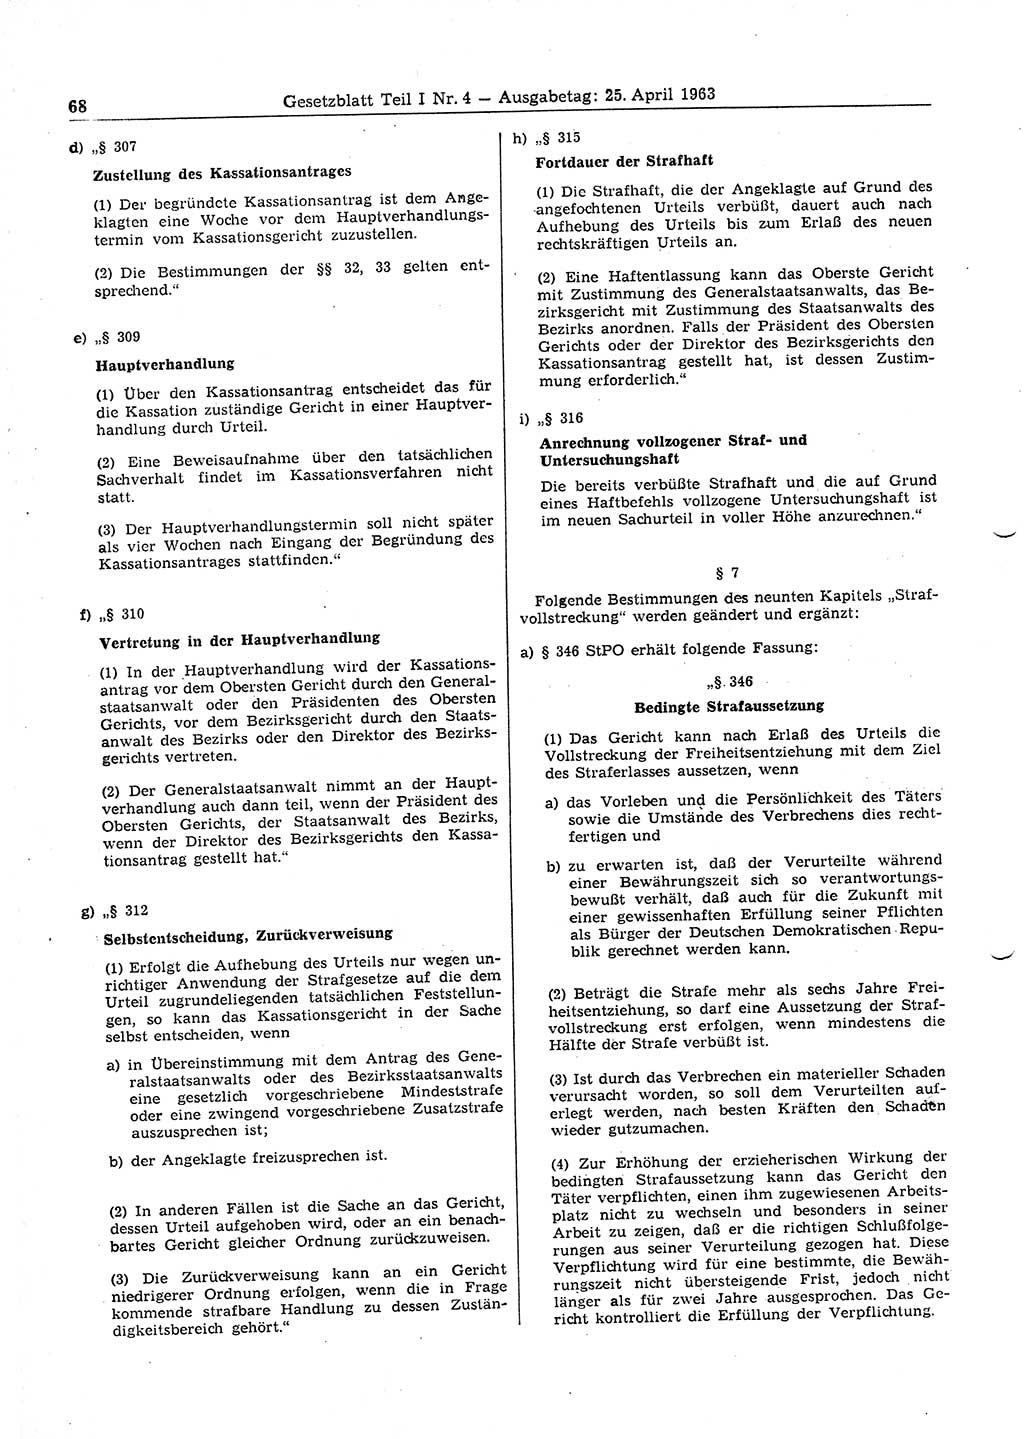 Gesetzblatt (GBl.) der Deutschen Demokratischen Republik (DDR) Teil Ⅰ 1963, Seite 68 (GBl. DDR Ⅰ 1963, S. 68)